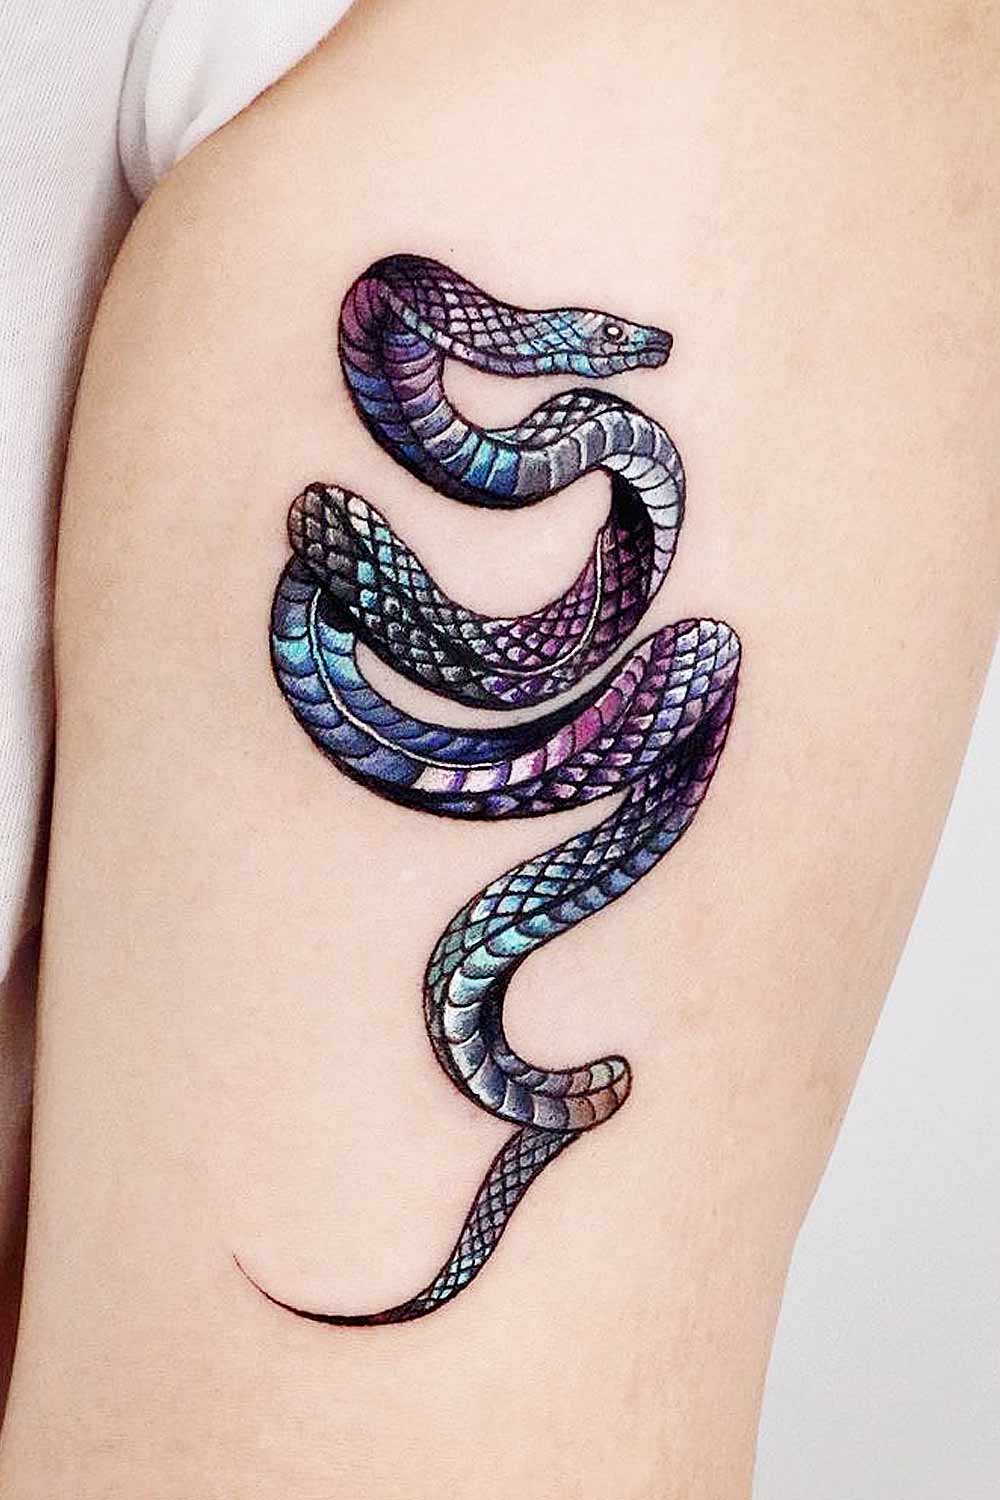 Minimalist Colorful Snake Tattoo